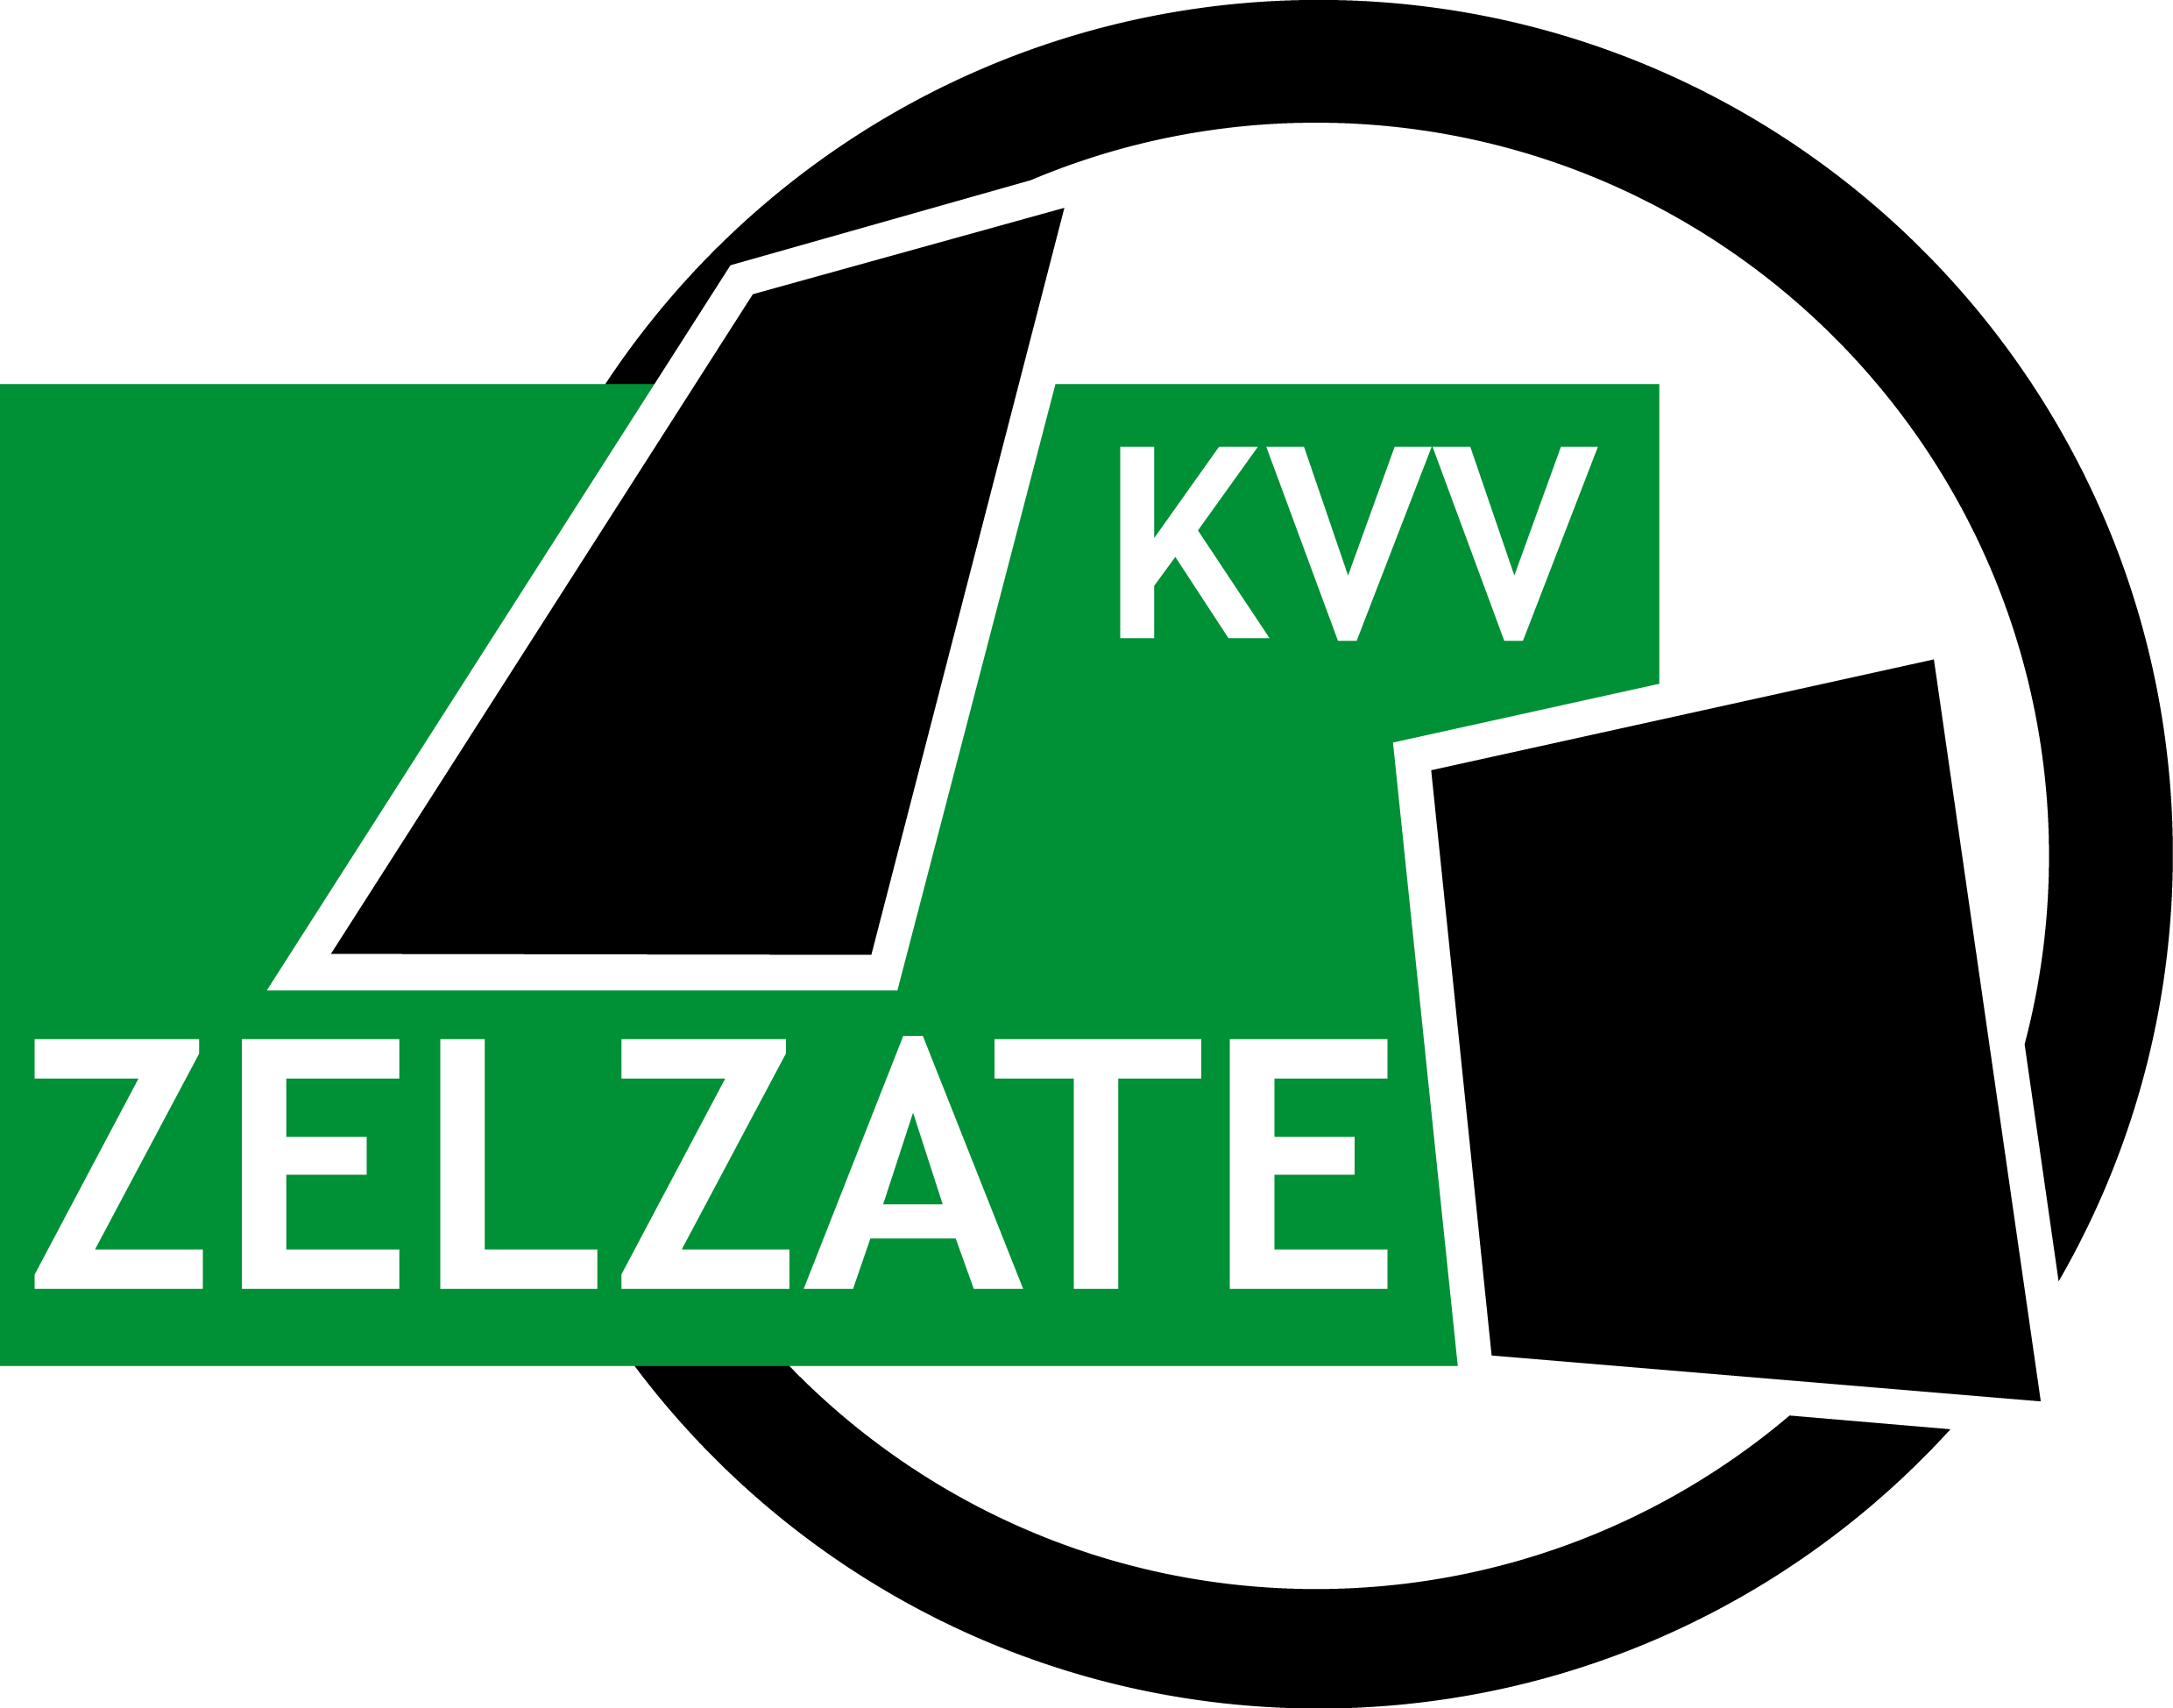 Zelzate logo